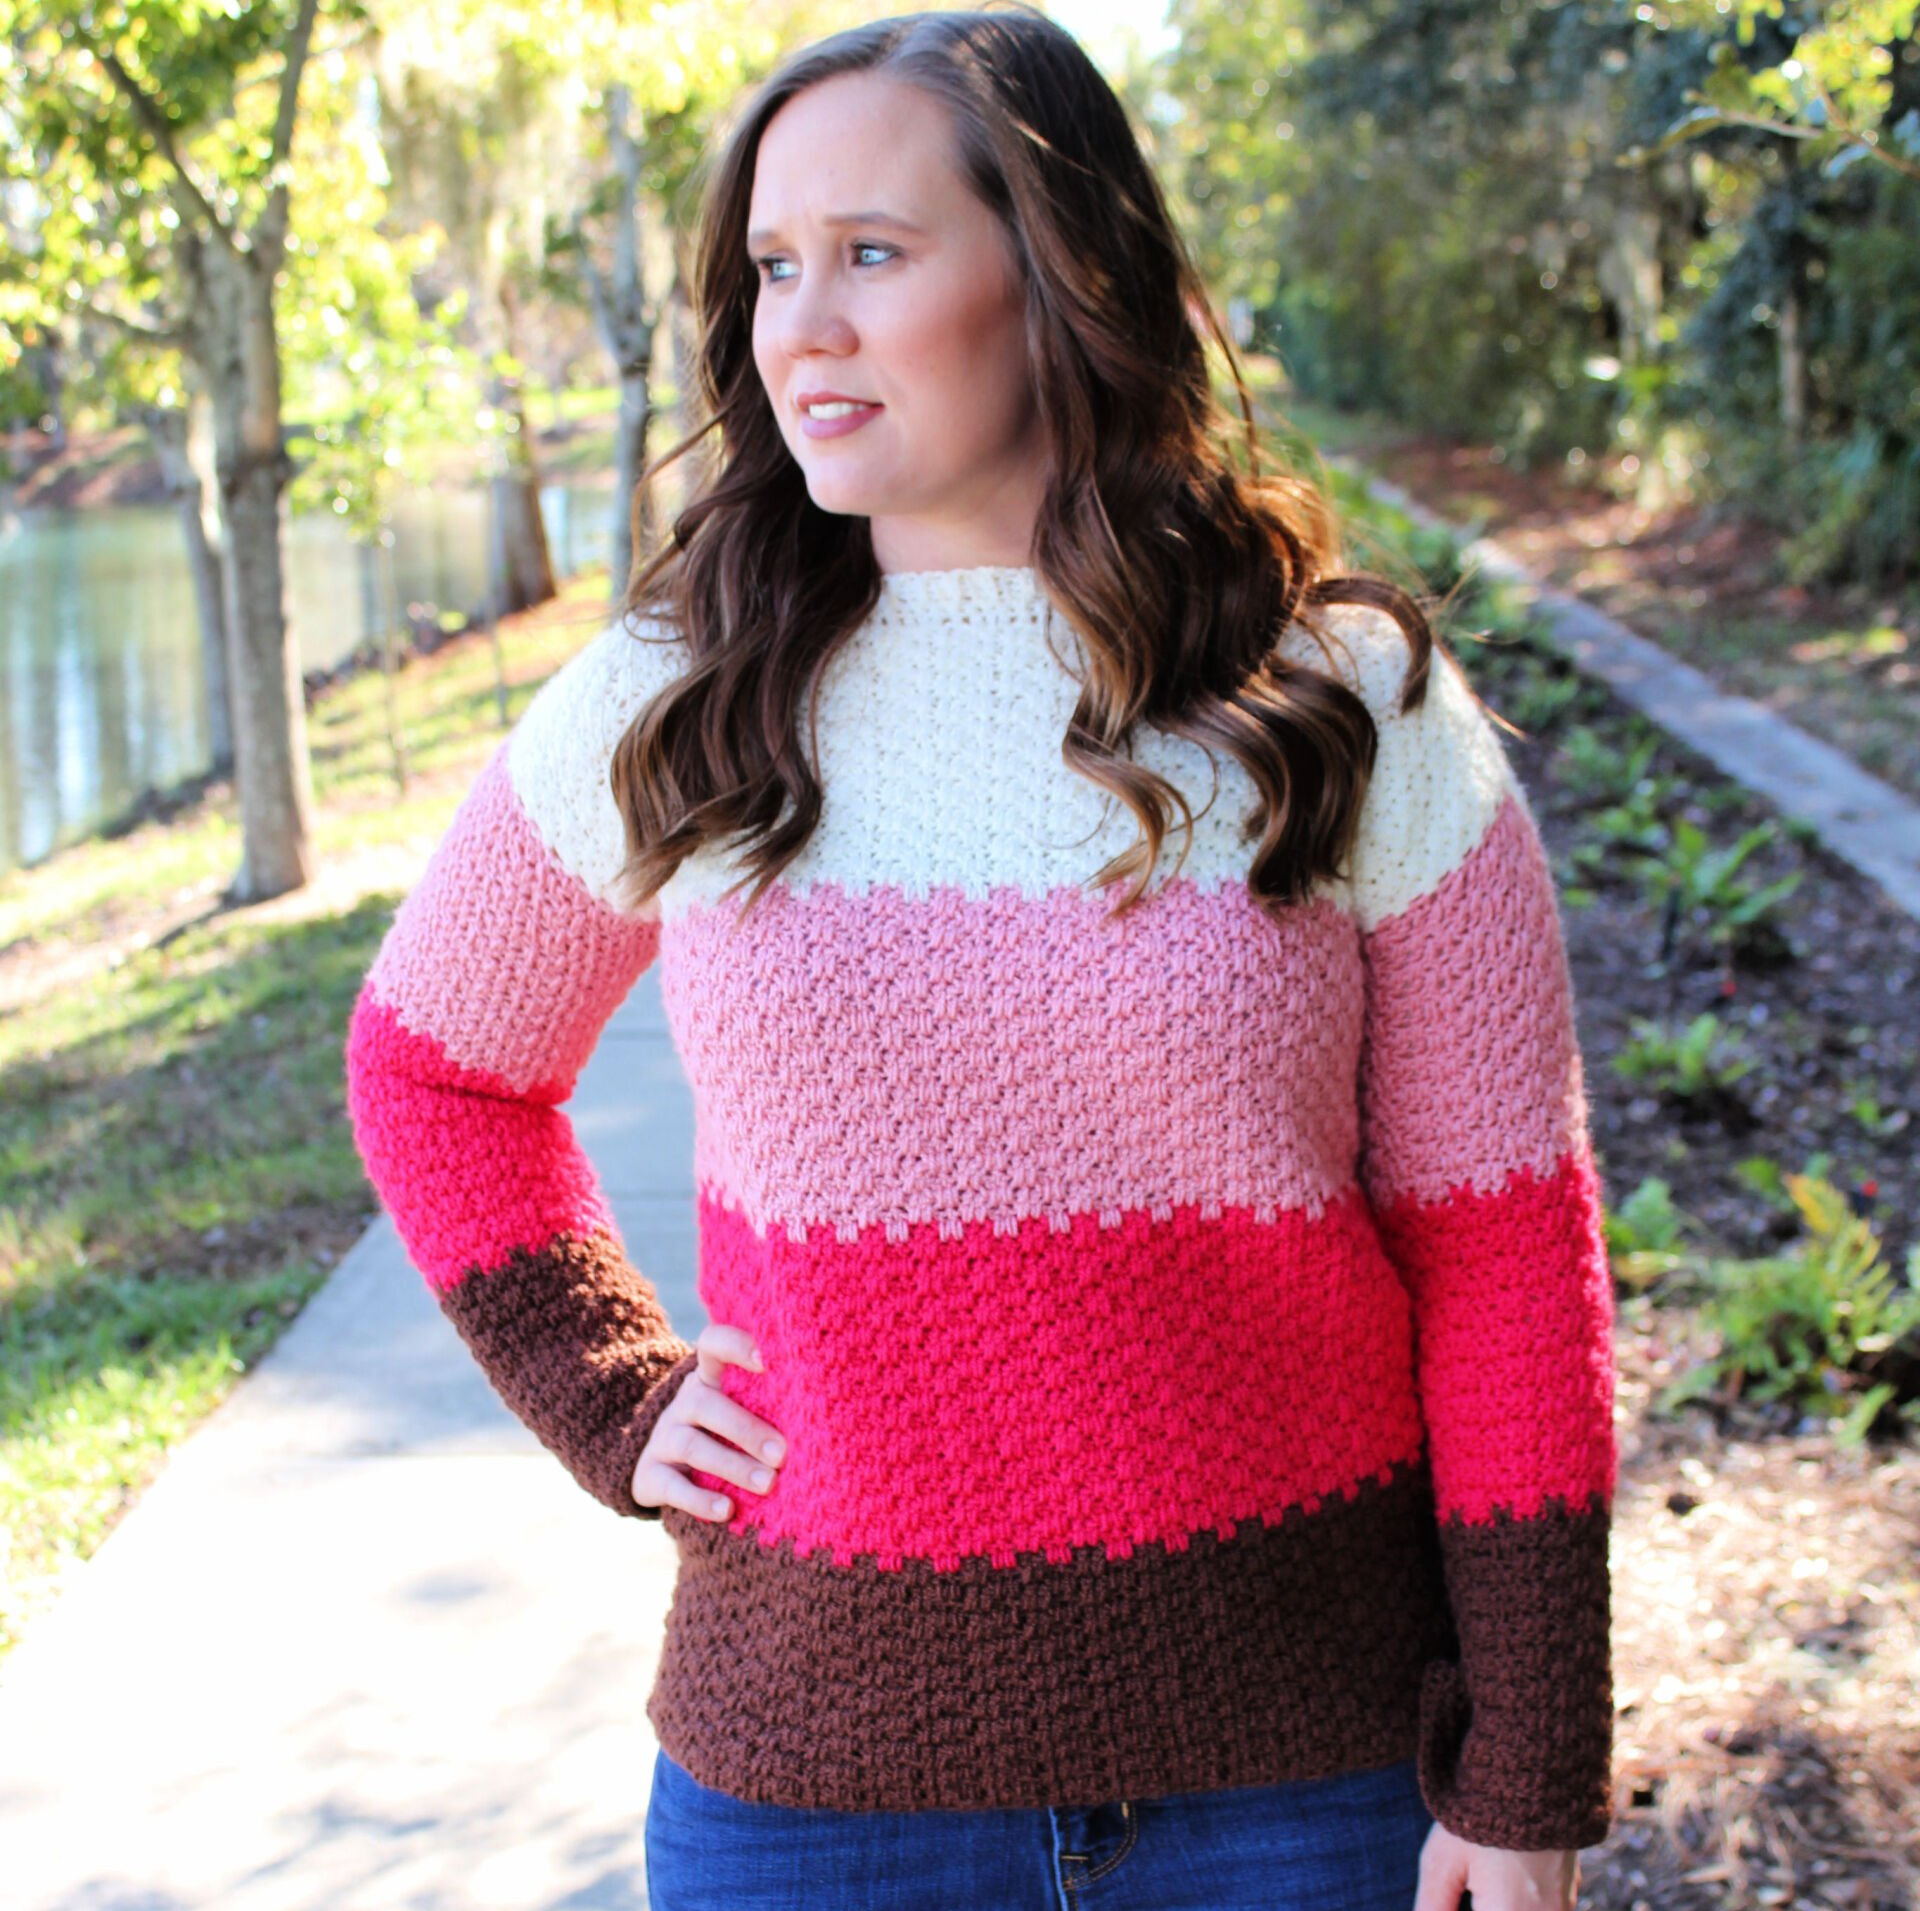 Crochet sweater pattern for beginners